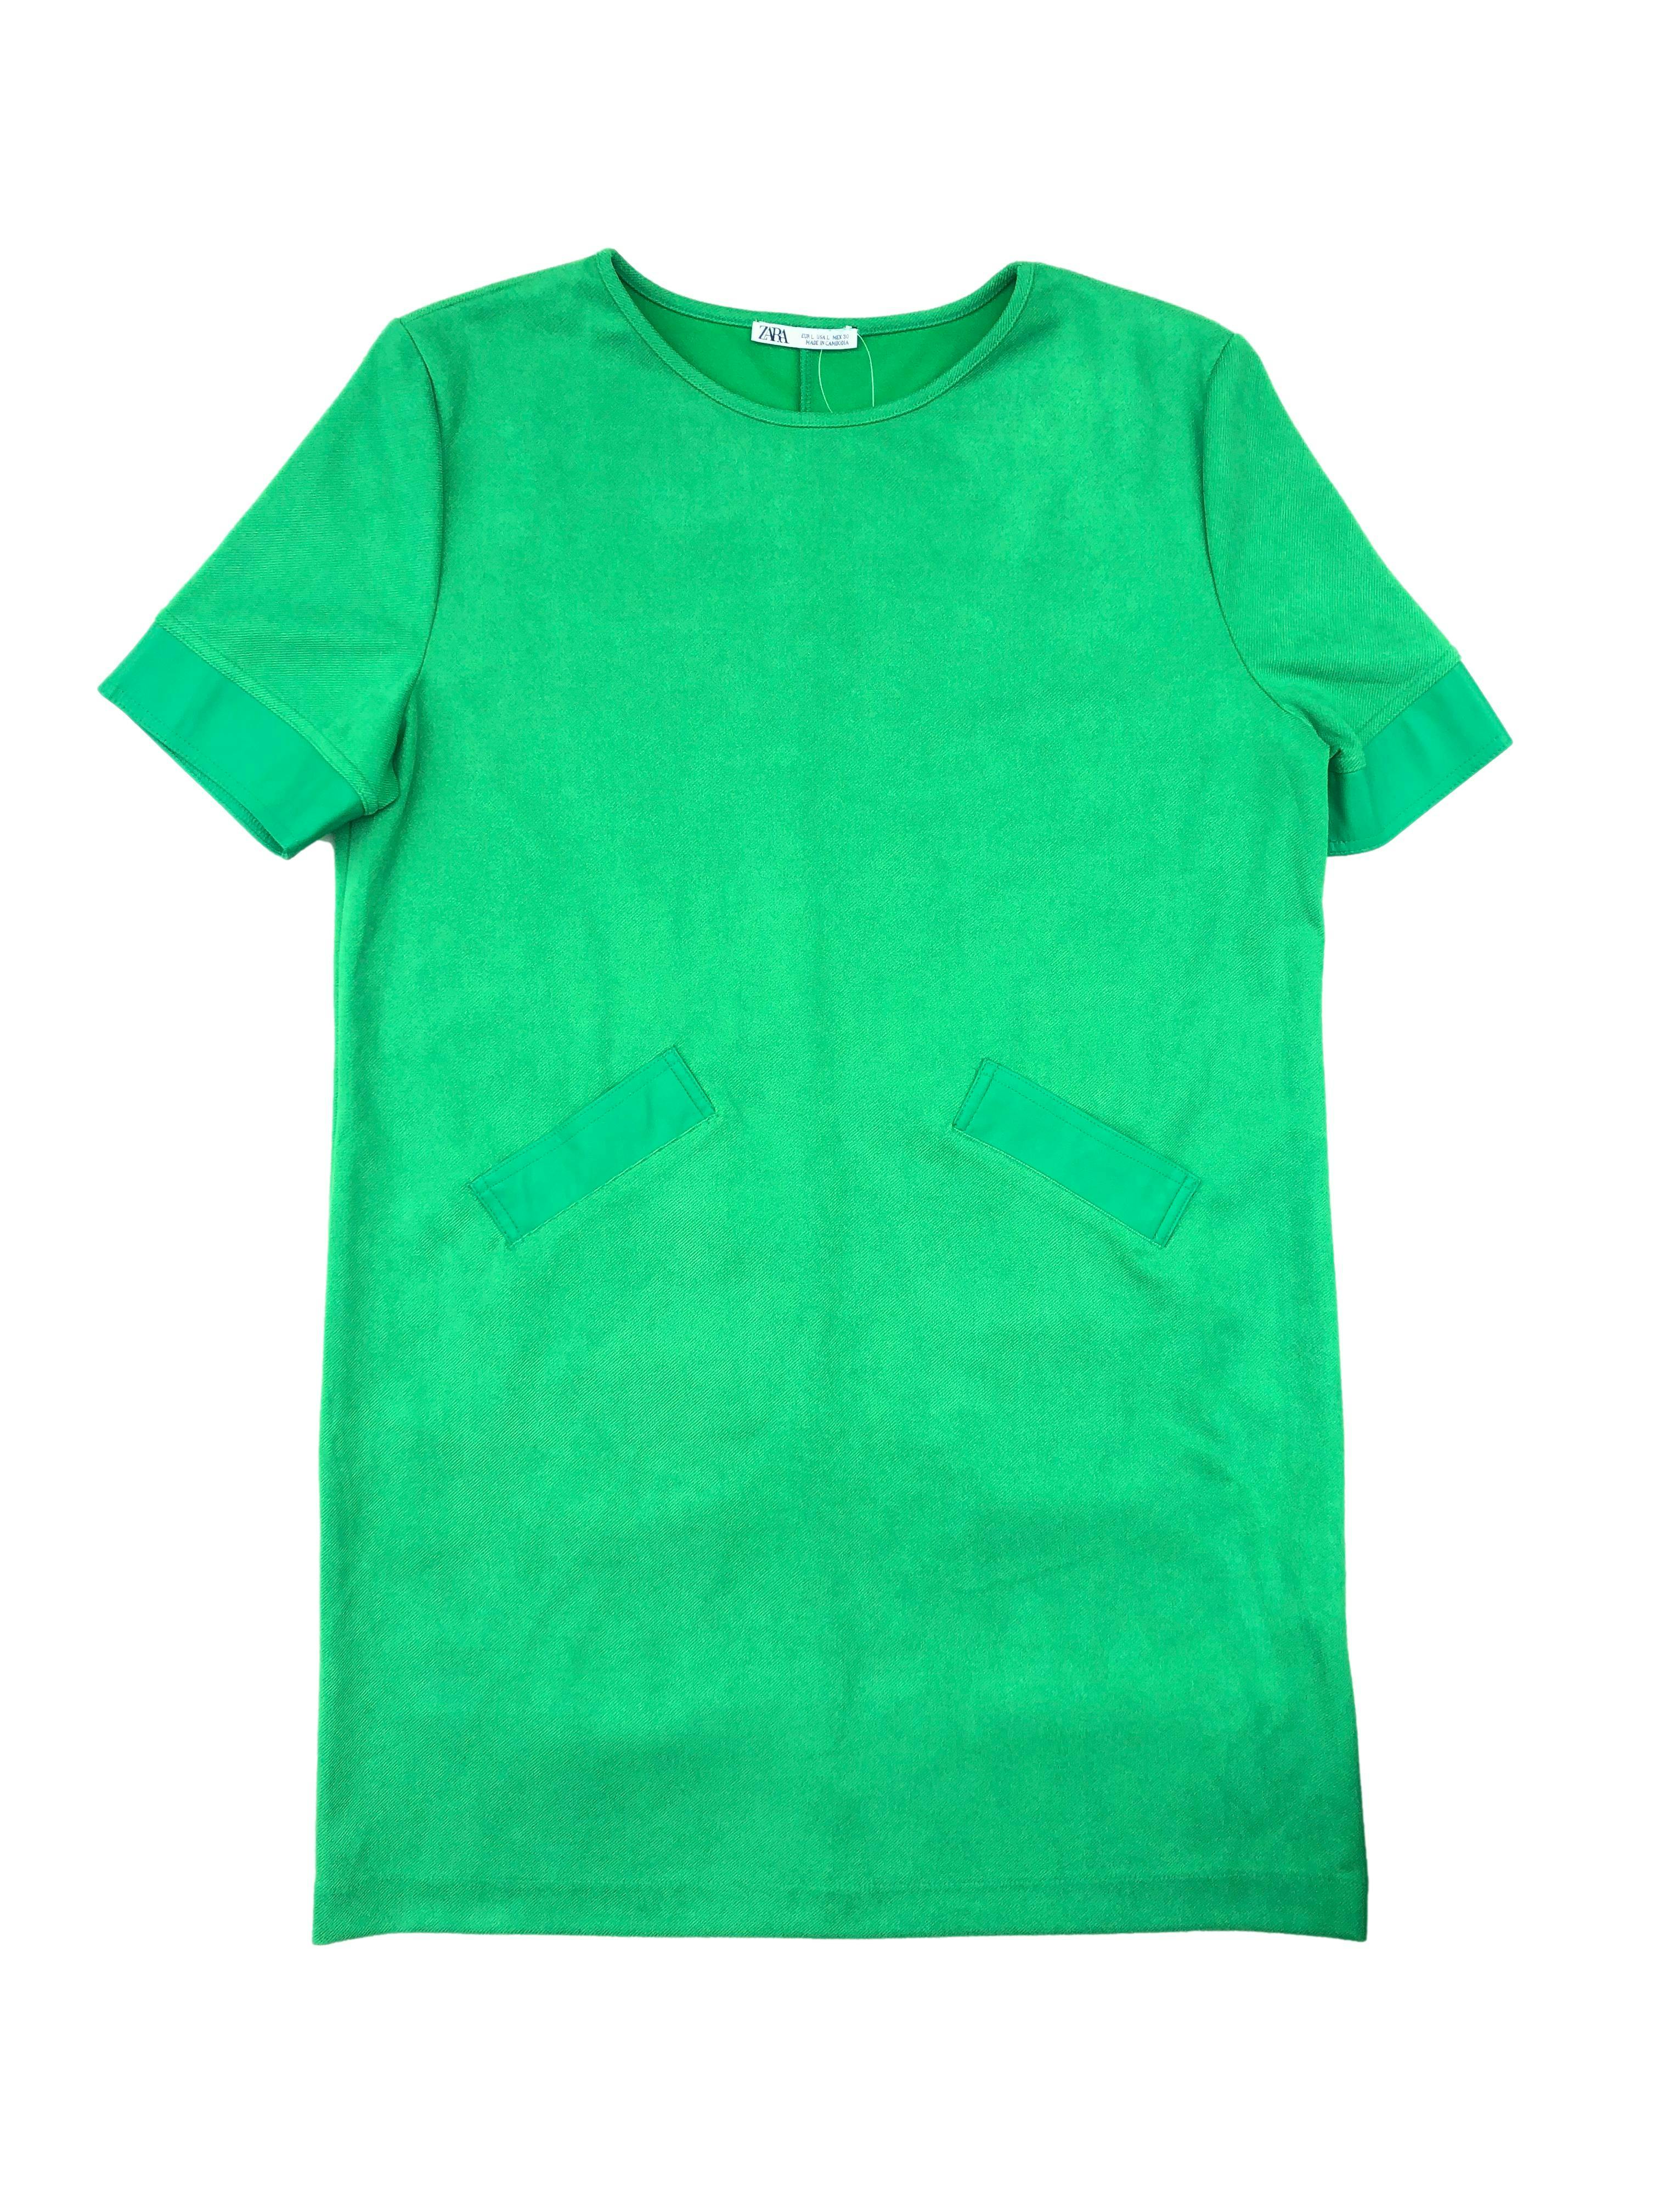 Vestido Zara en tono verde hoja, tela de punto con mangas y bolsillos efecto cuero, corte recto.Busto 110cm, Largo 85cm